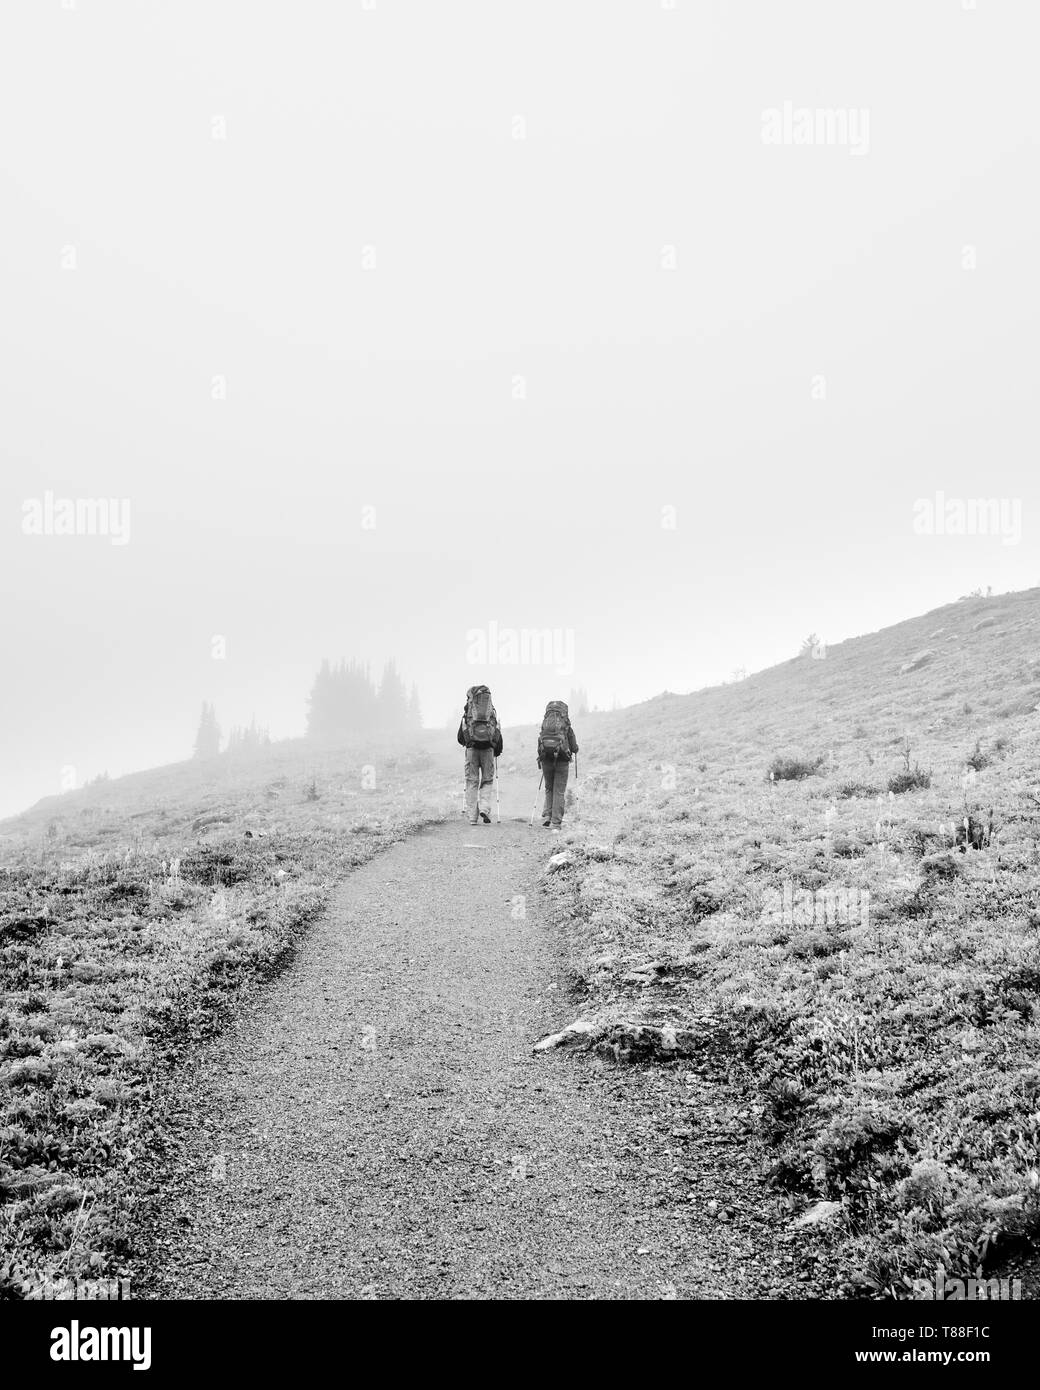 À 7500 pieds, un chemin mène misty les secoueurs par deux dans les montagnes et au-delà du Sunshine Meadows. Banque D'Images